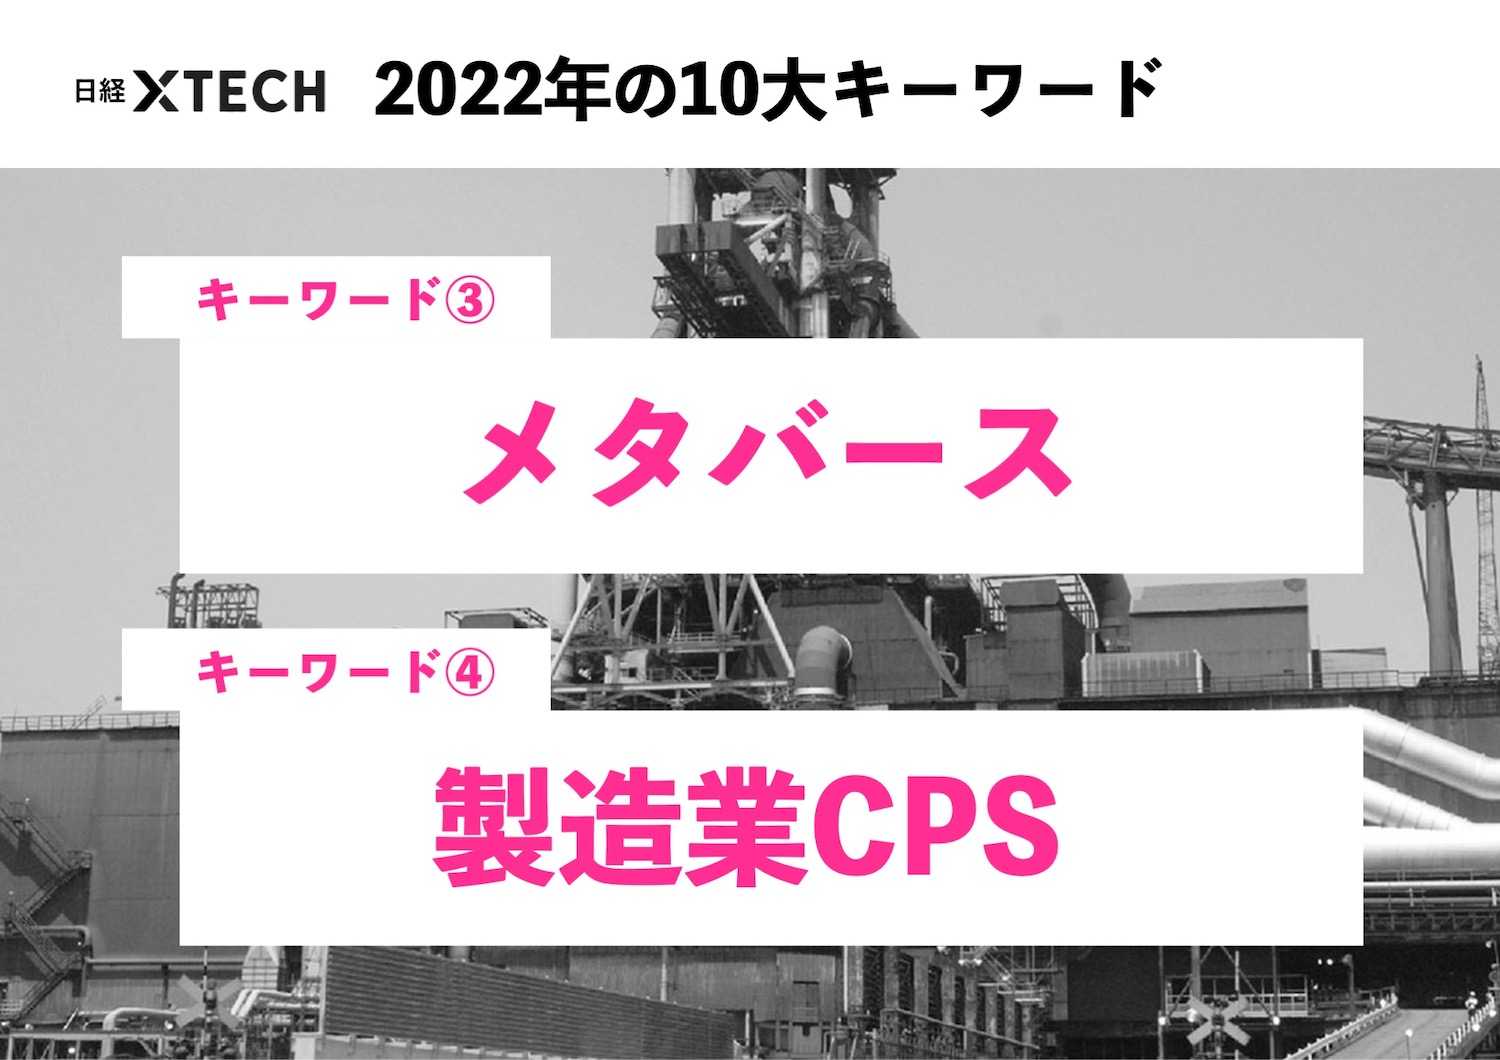 2022年10大キーワード（3）（4）「メタバース」「製造業CPS」で何が 